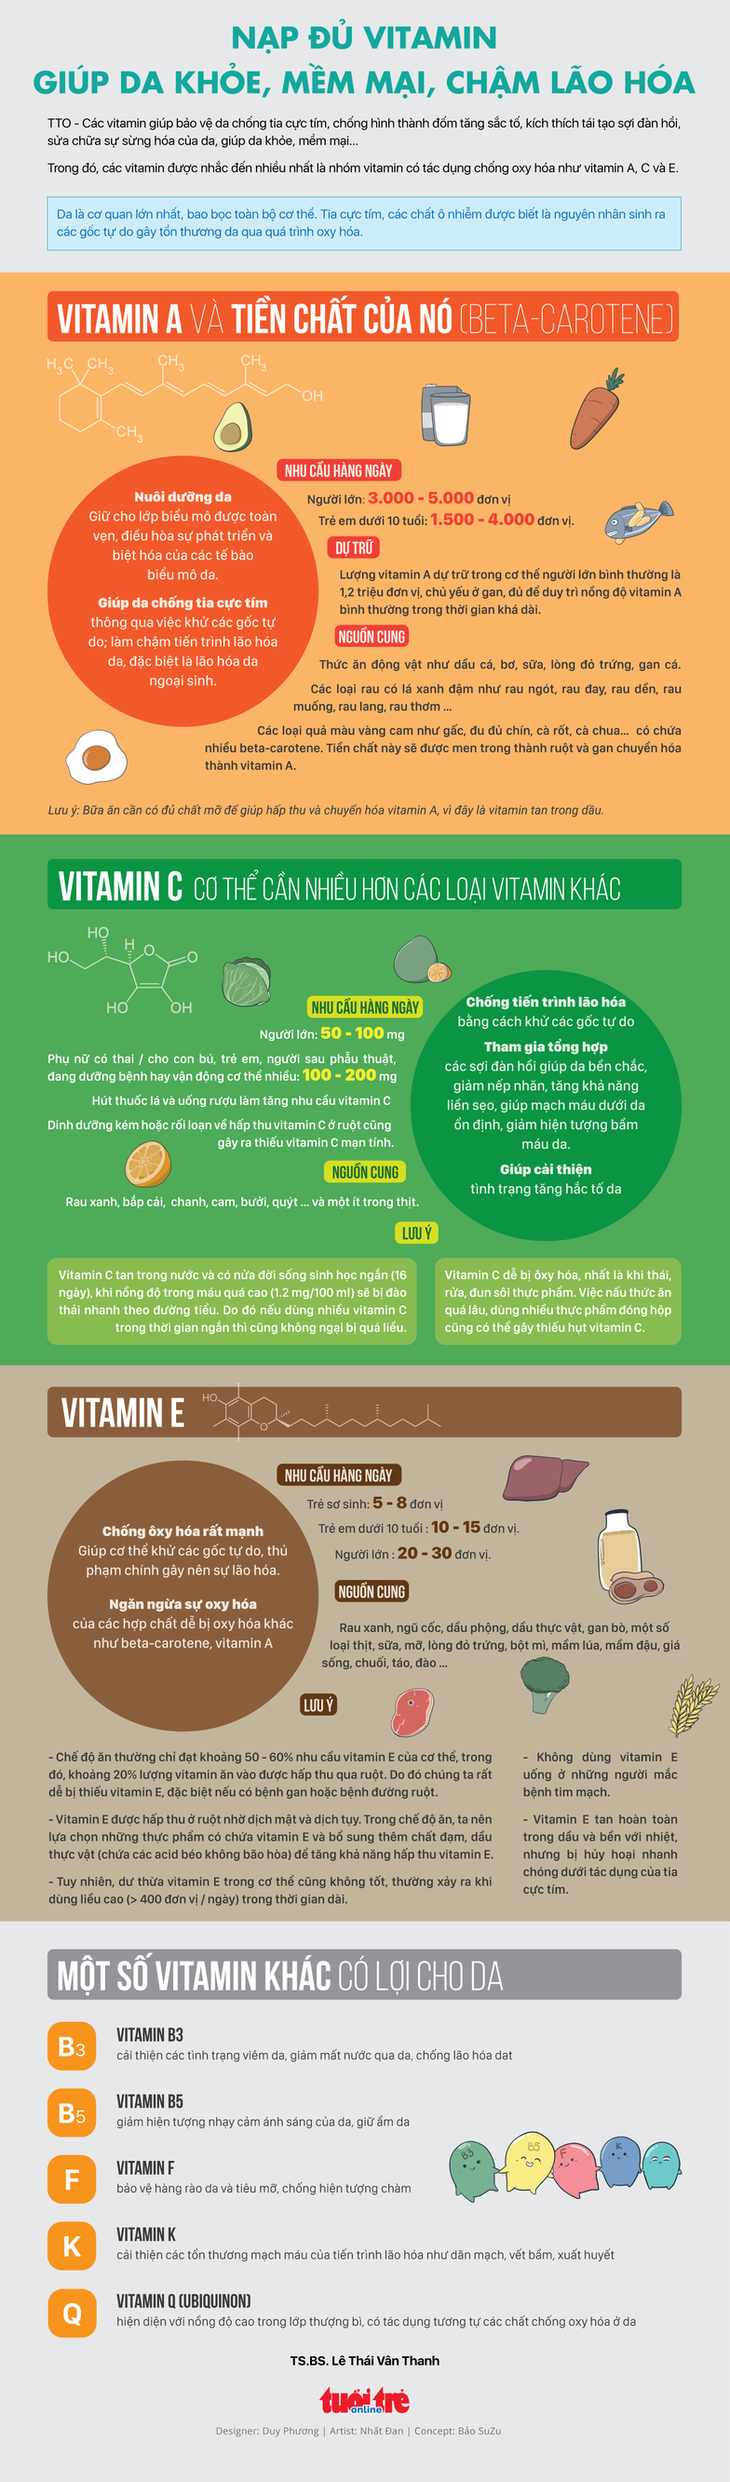 Nạp đủ vitamin - chìa khóa chống chọi lão hóa da - Ảnh 1.